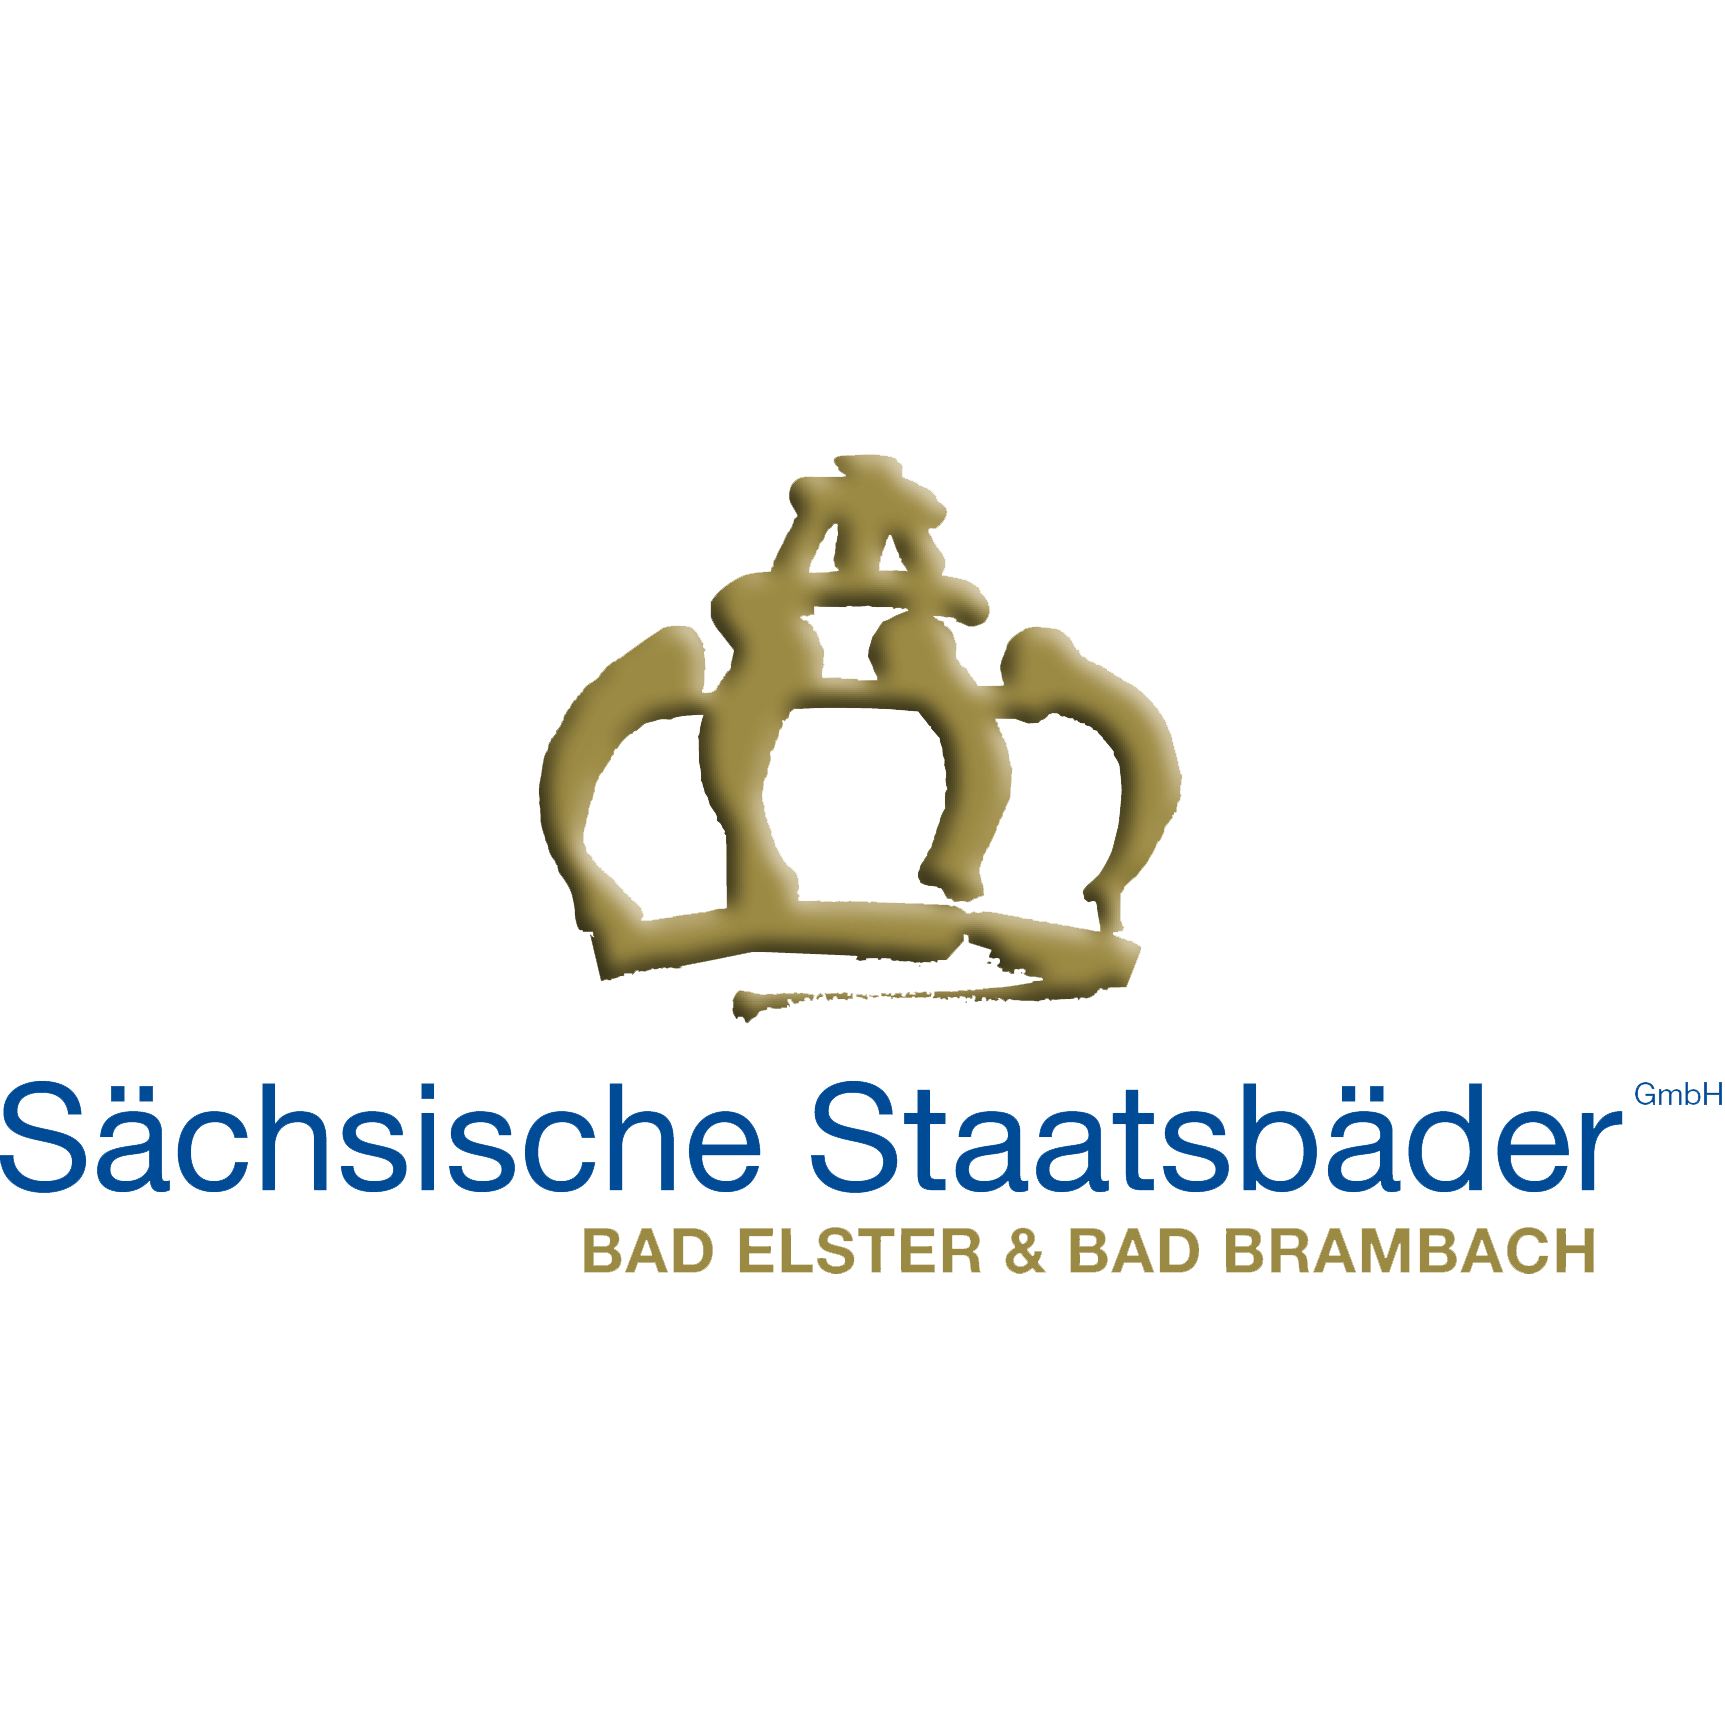 Sächsische Staatsbäder GmbH - Soletherme & Saunawelt Bad Elster in Bad Elster - Logo